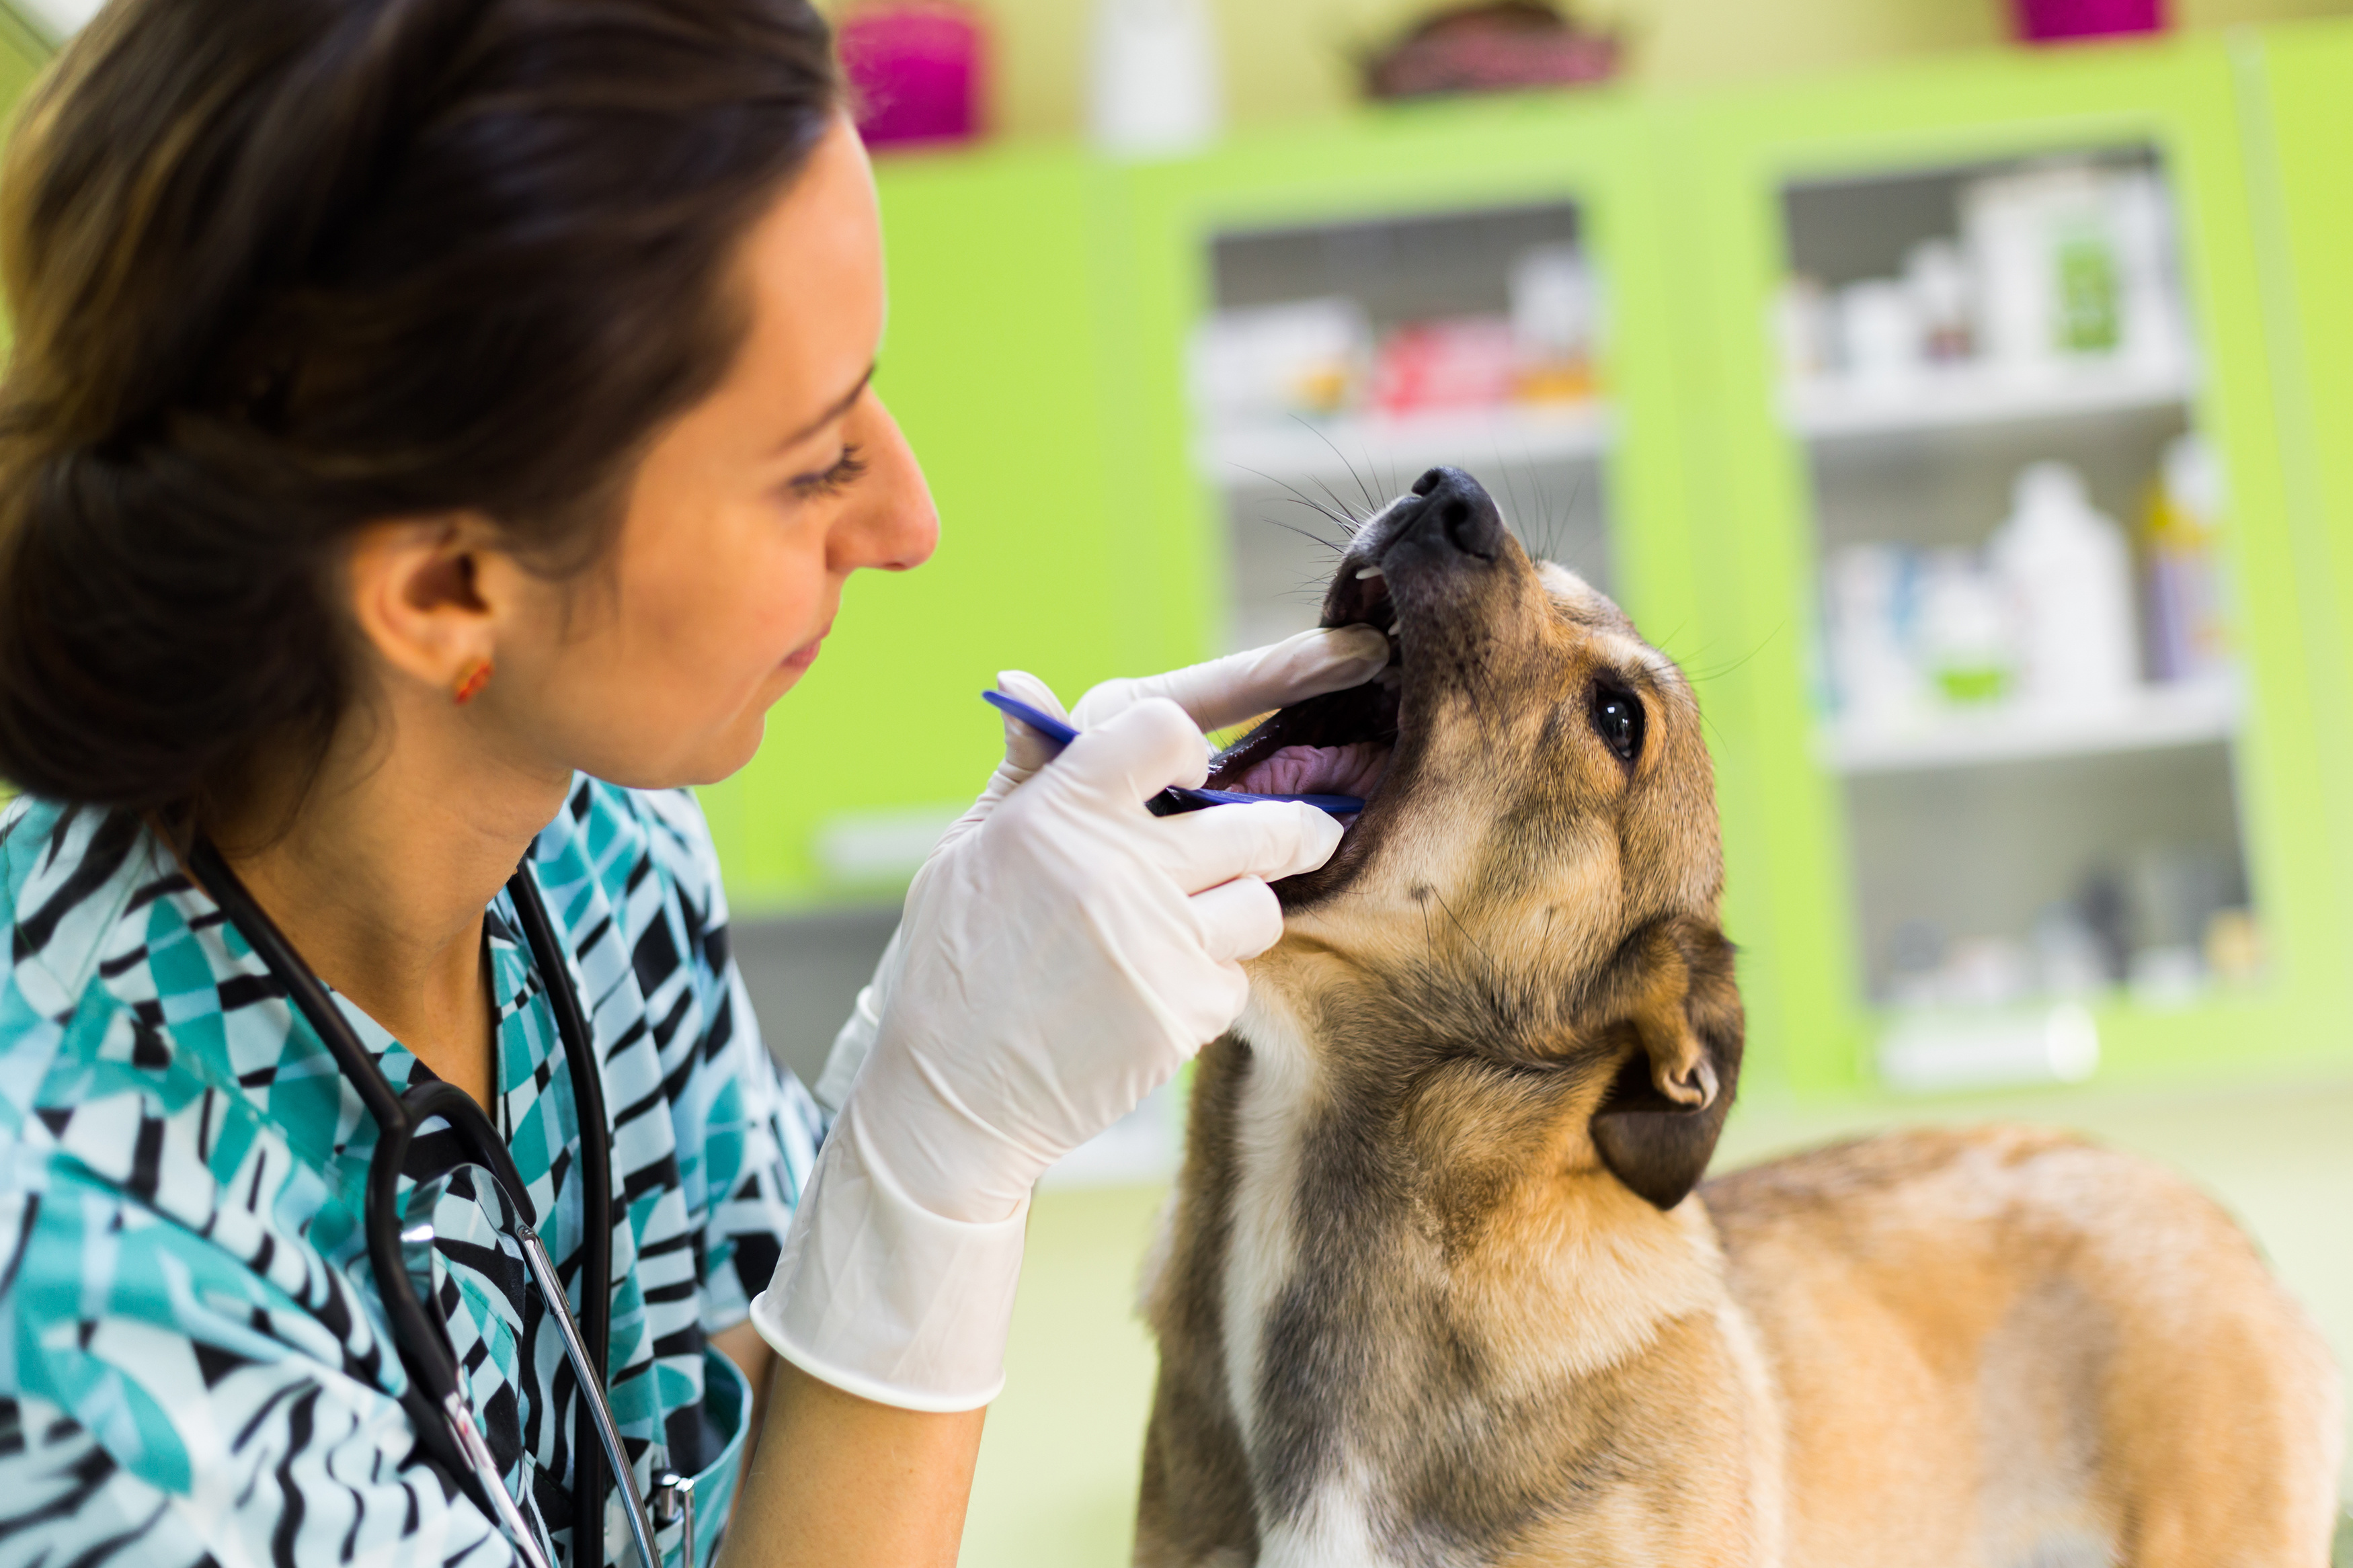 Zwingerhusten beim Hund Symptome &amp; Behandlung